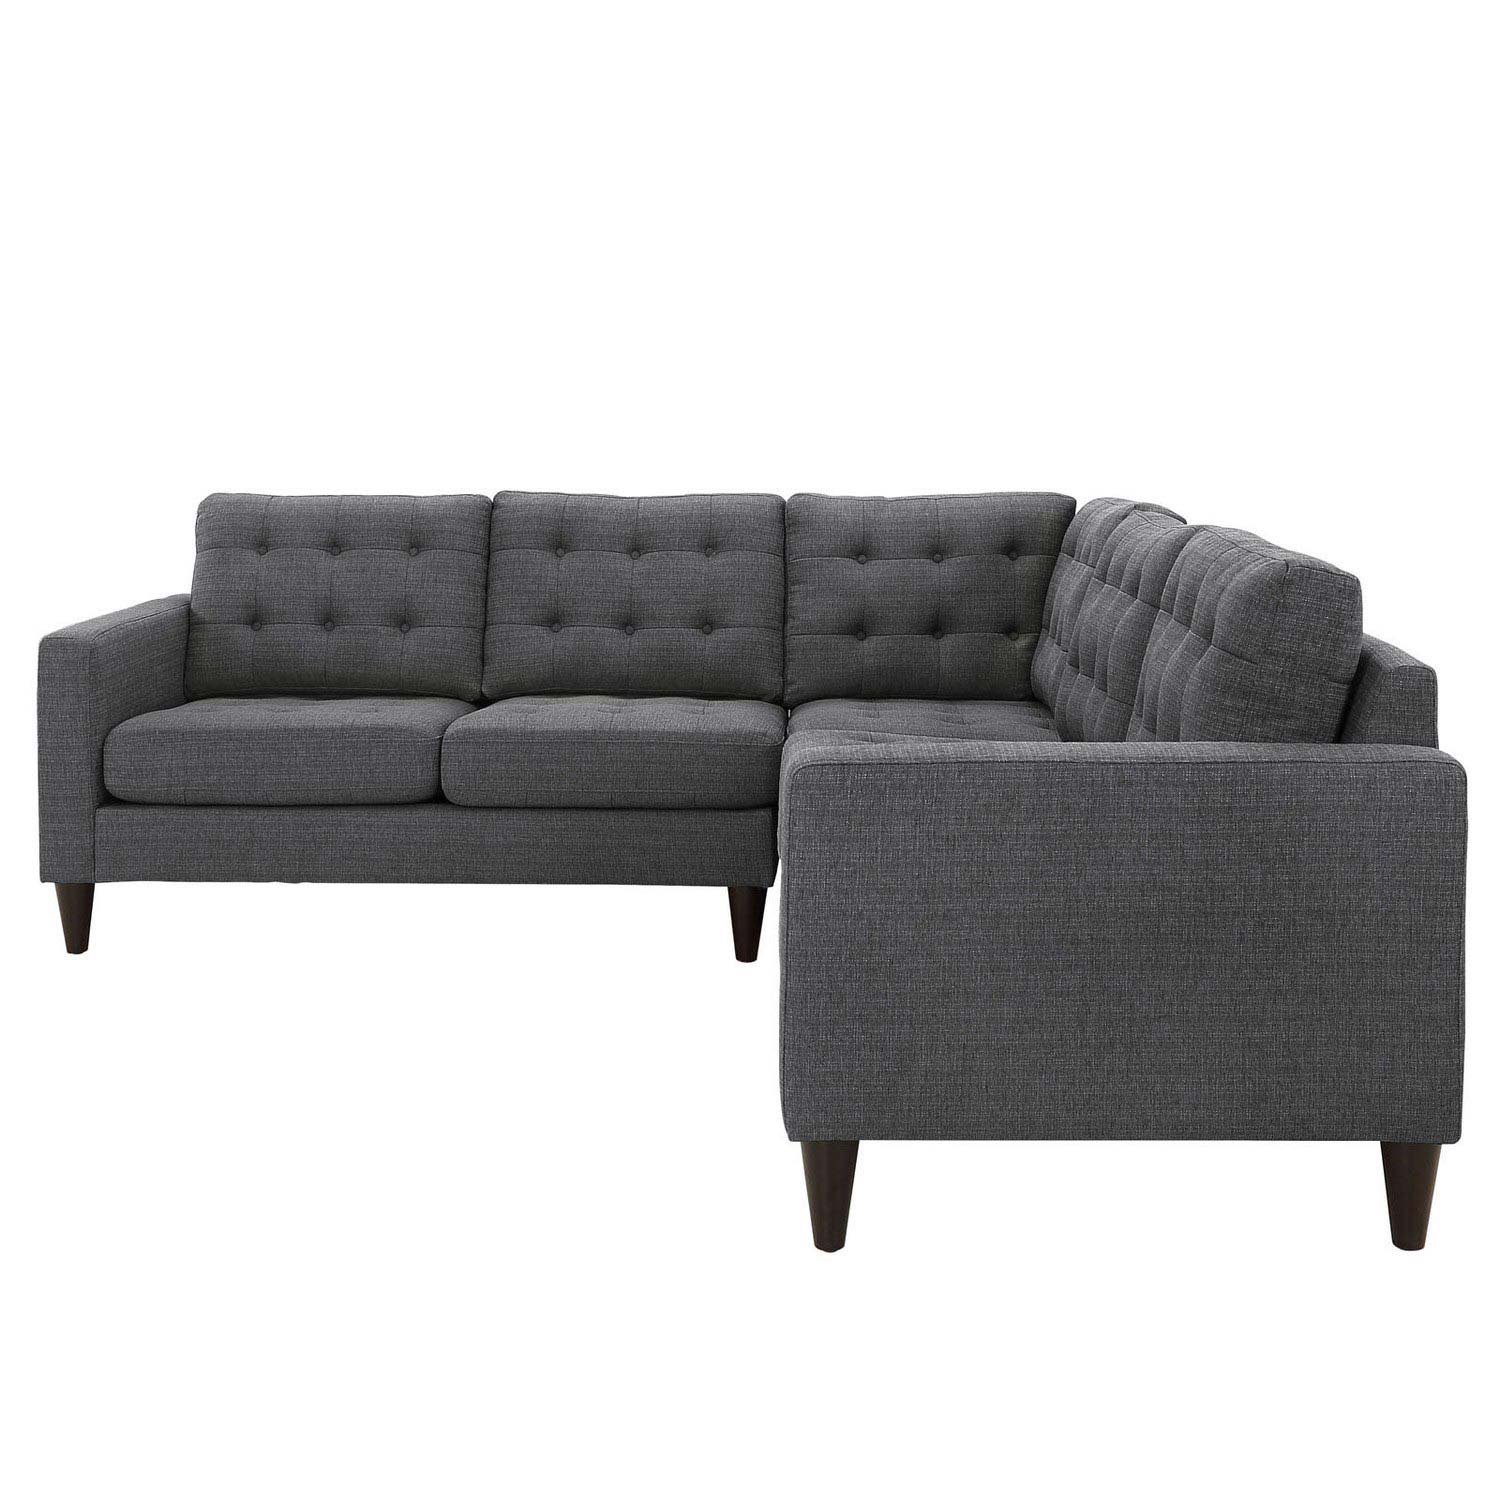 Modway Empress 3 Piece Fabric Sectional Sofa Set - Gray